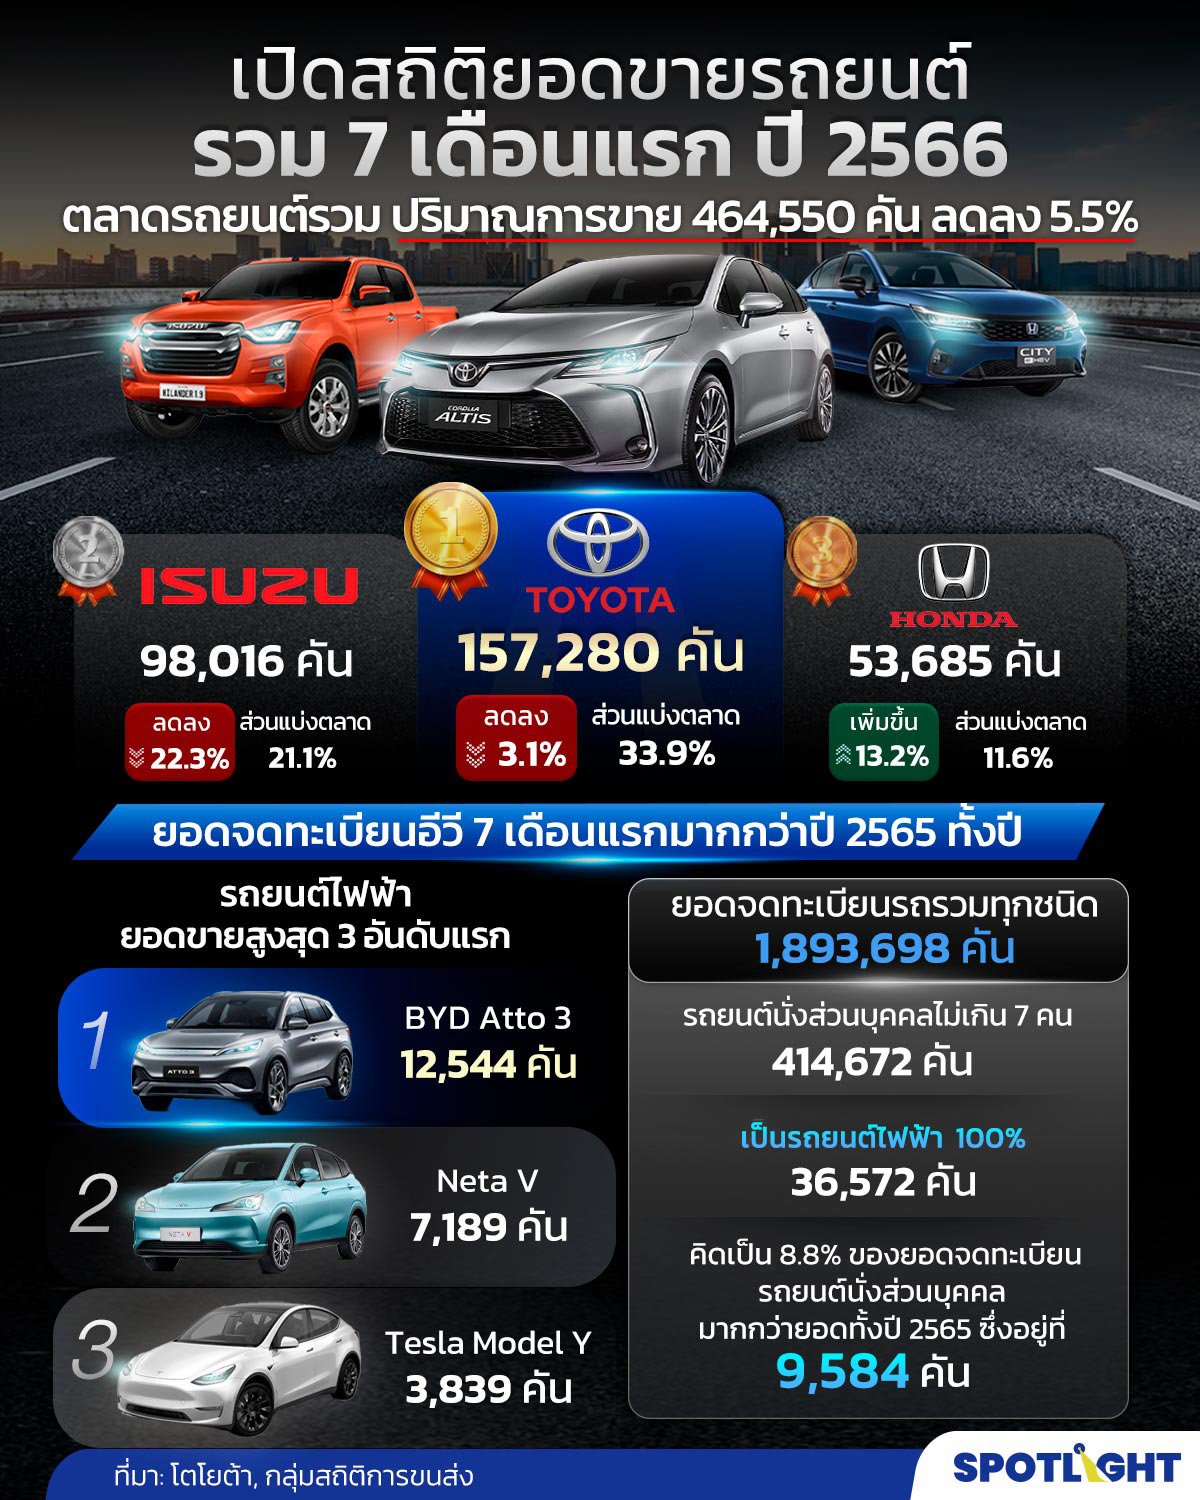 ยอดขายรถยนต์ของไทยใน 7 เดือนแรกของปี 66